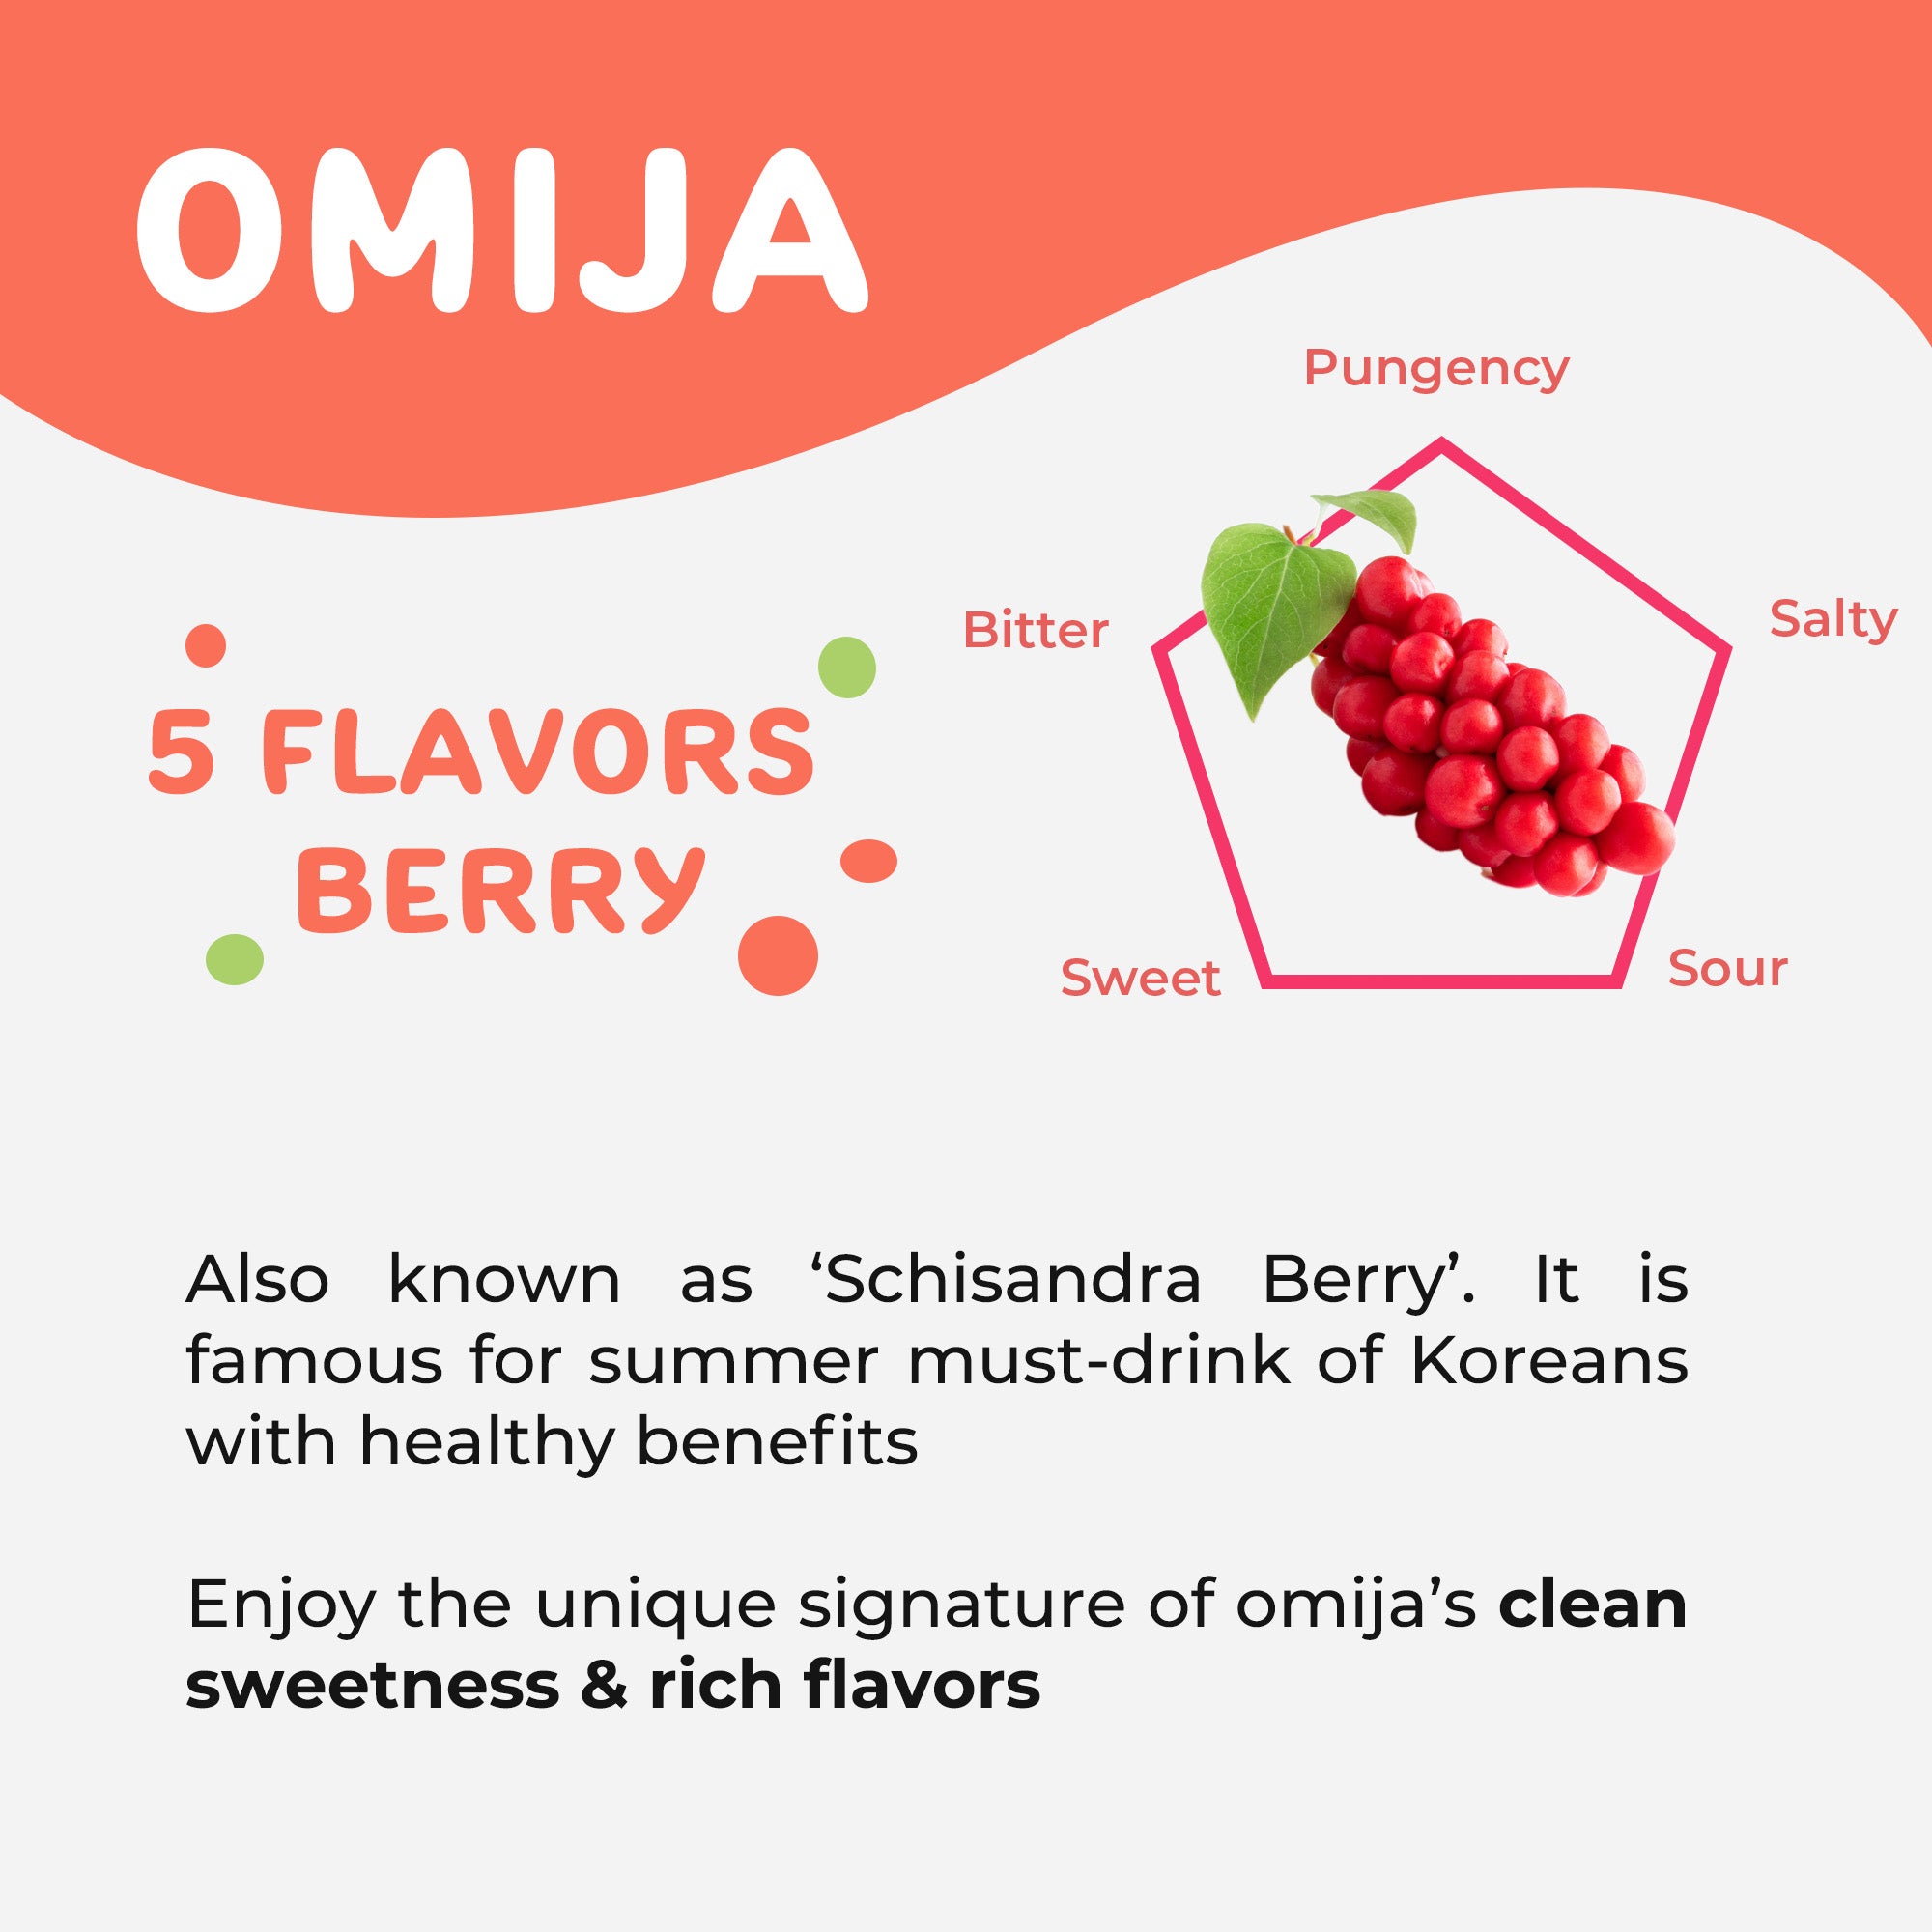 Benefits of Schisandra Berry(Omija)